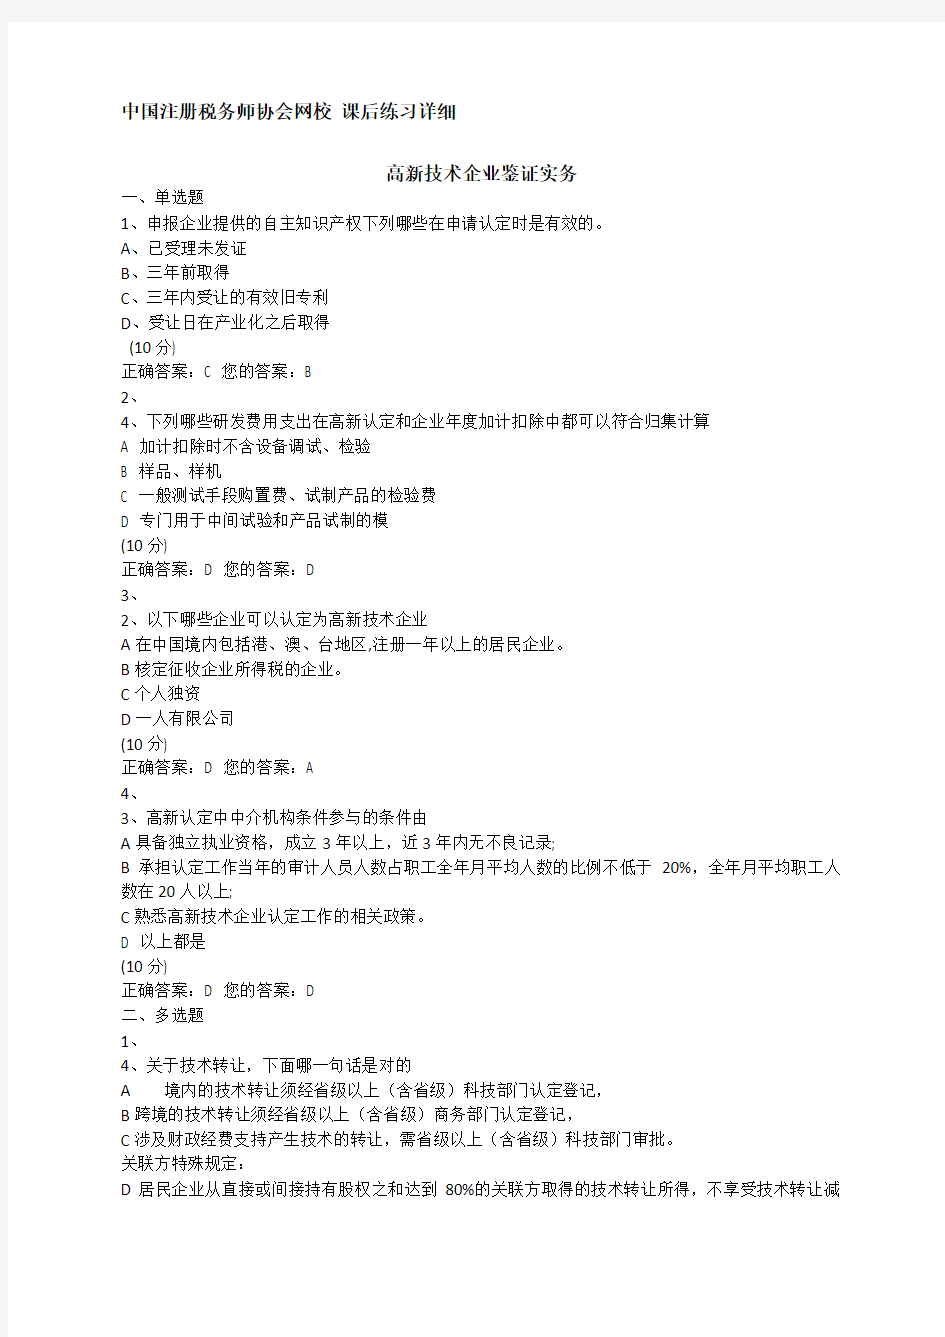 中国注册税务师协会网校2013课后练习详细